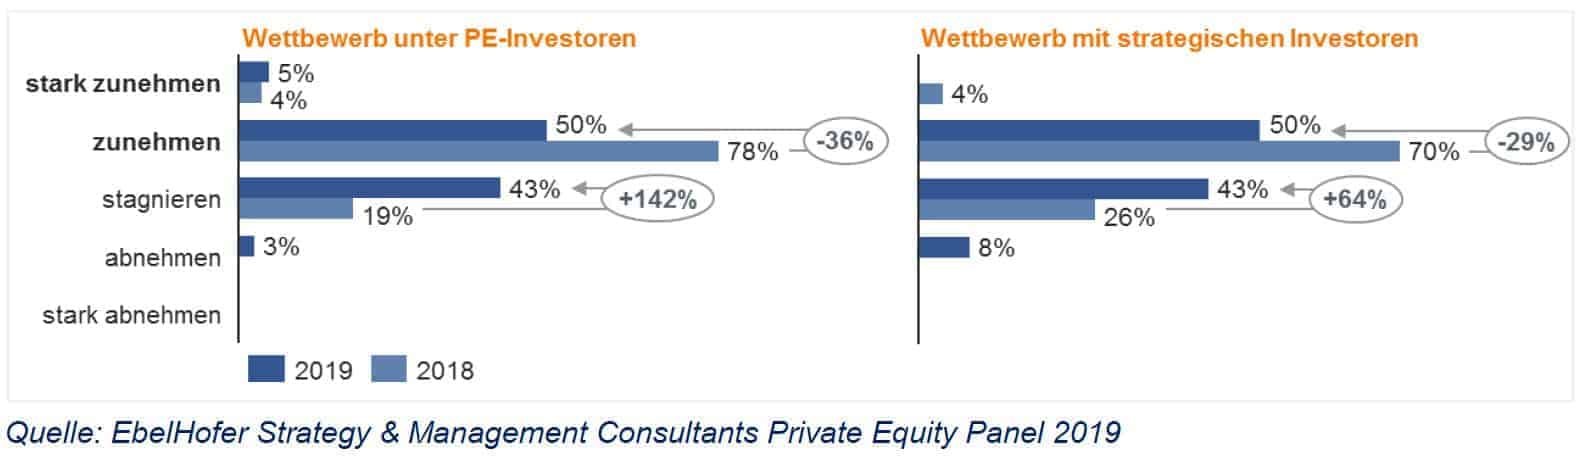 Private Equity: Wettbewerbsintensität nimmt zu